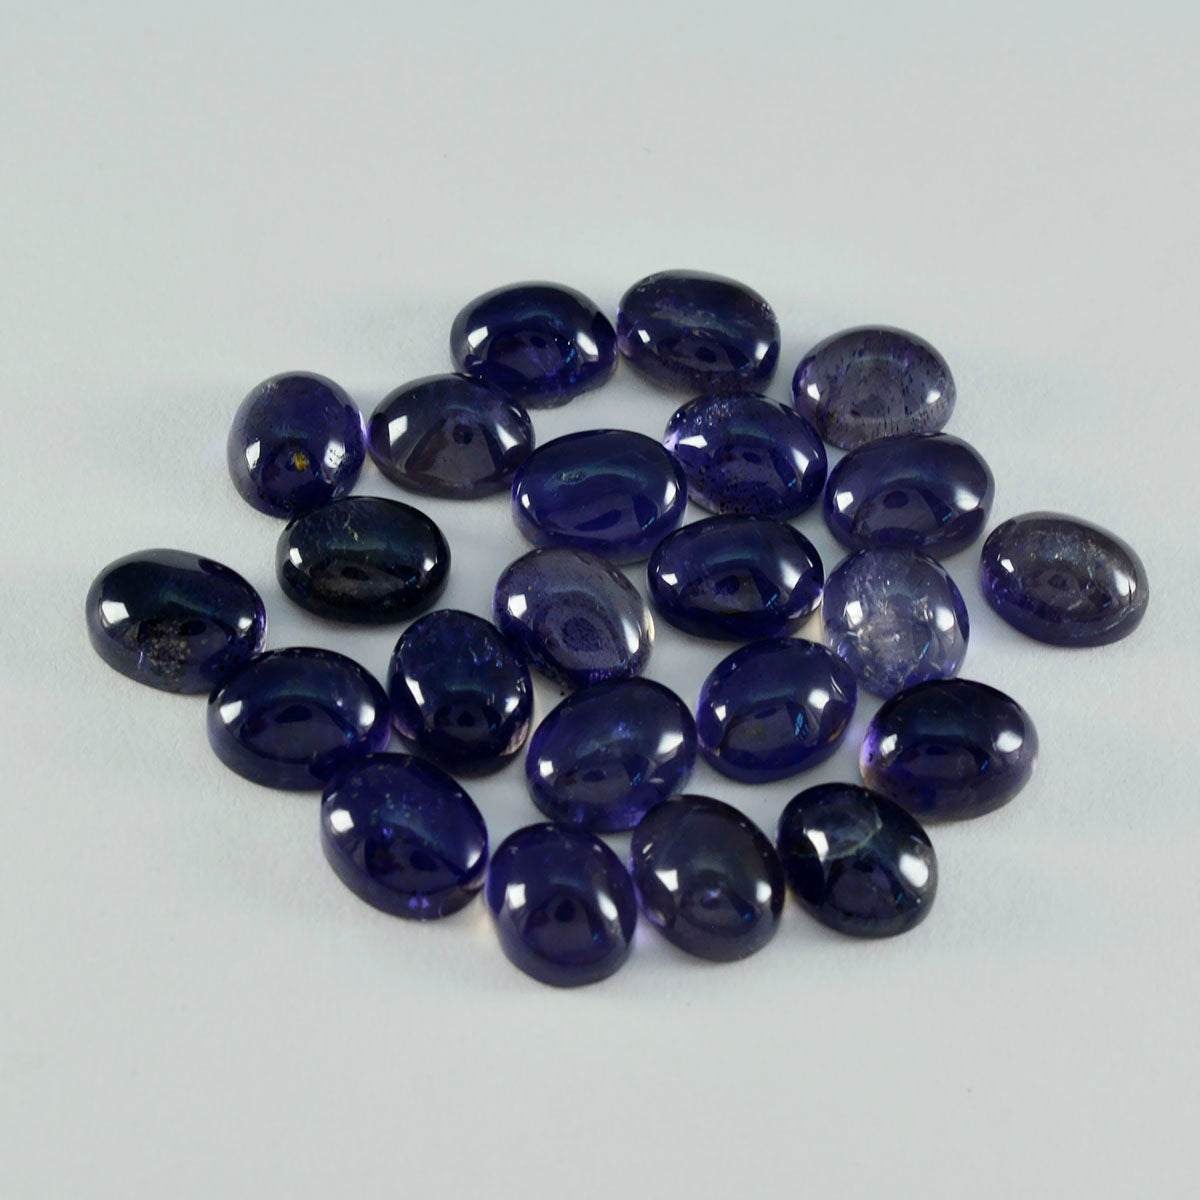 Riyogems 1PC blauwe ioliet cabochon 9x11 mm ovale vorm mooie kwaliteit losse edelstenen